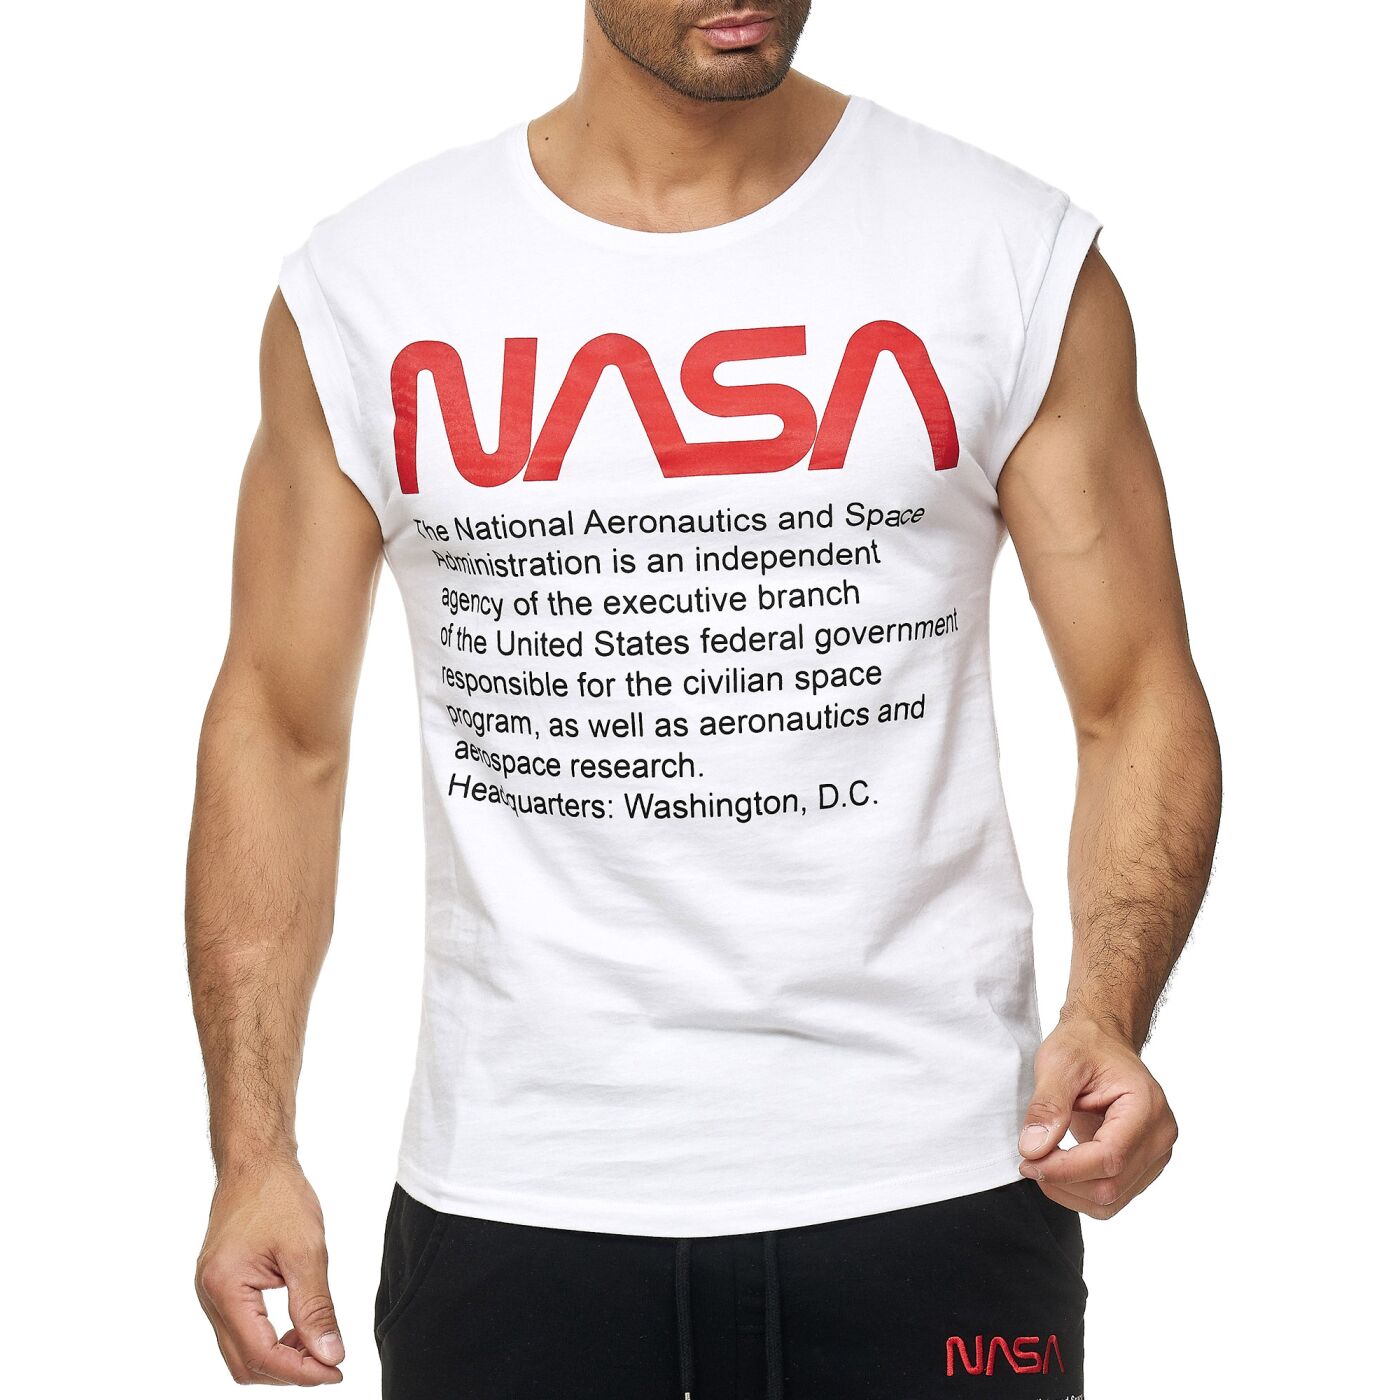 senza maniche in cotone Red Bridge Canotta da uomo con logo NASA USA M1835